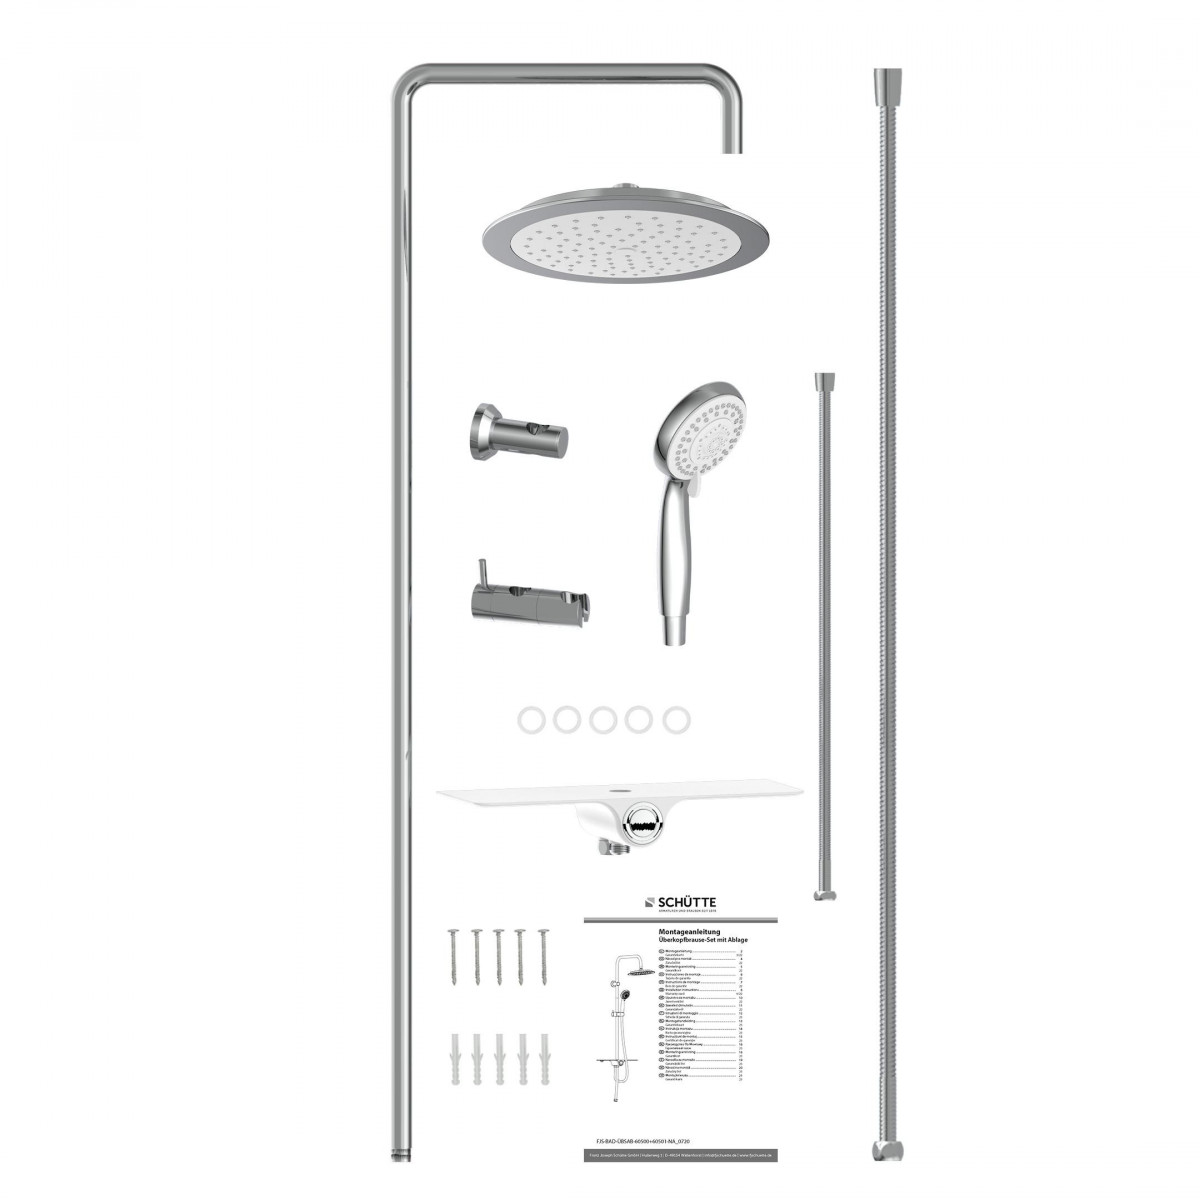 AQUASTAR Set de douche à l'envers avec tablette de douche, Chromé/Blanc